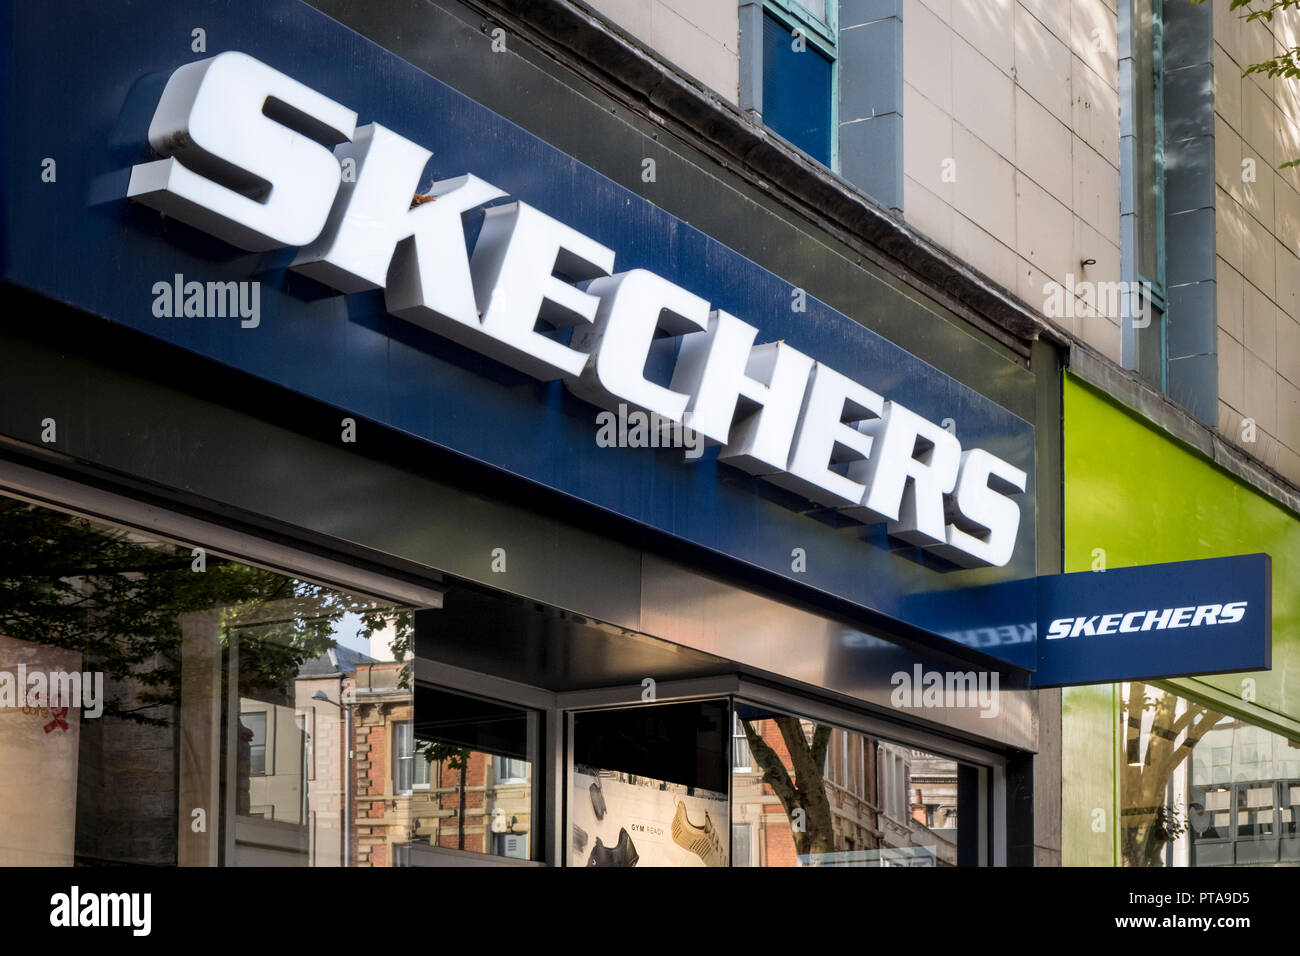 sketchers stores uk